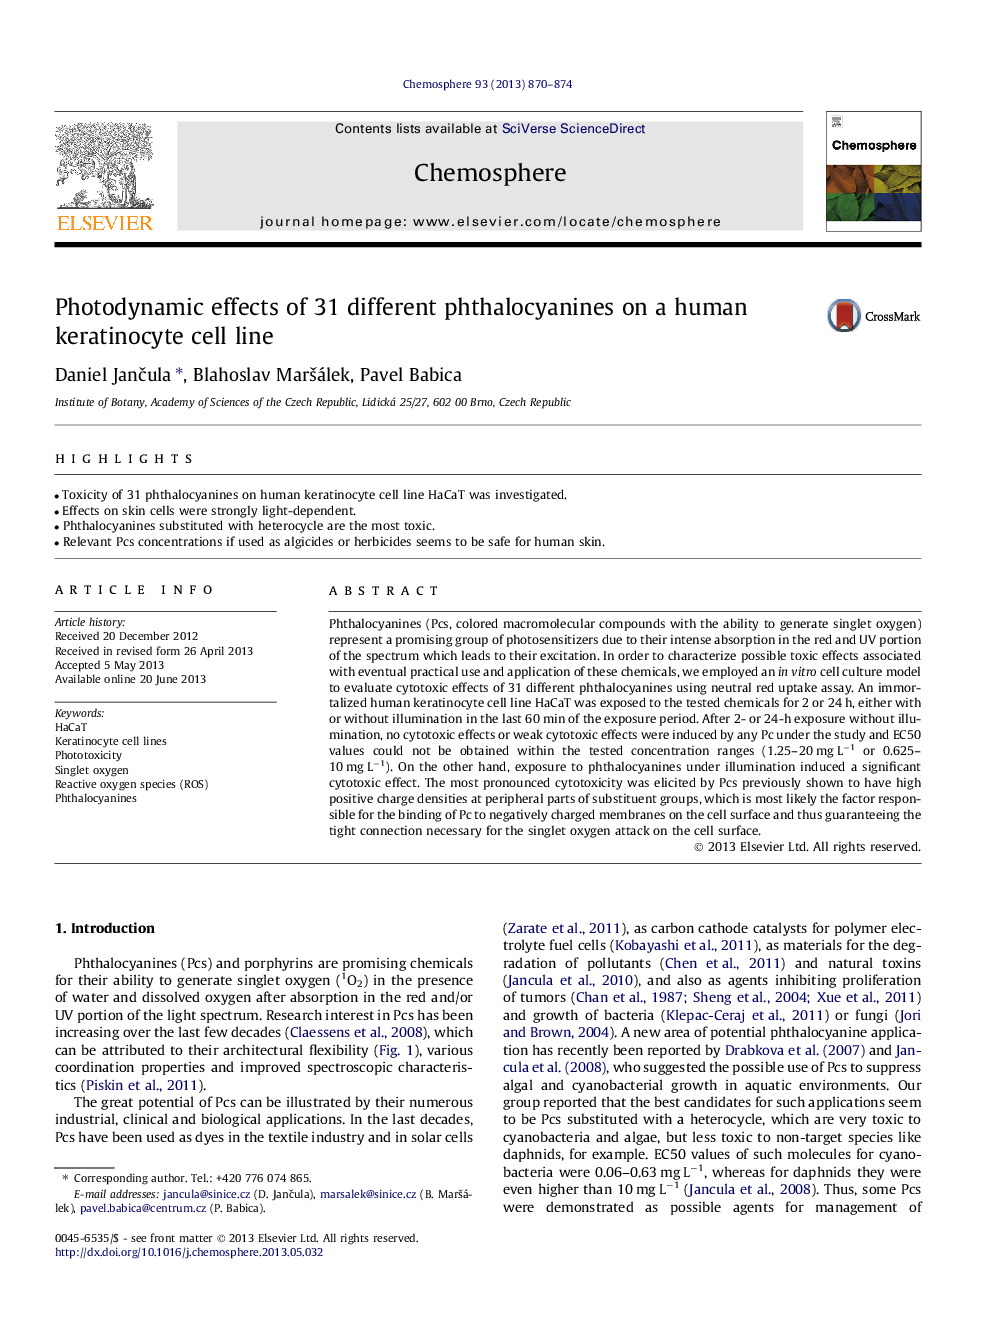 اثر فوتودینامیک 31 فتالوسیانین مختلف بر روی سلول کراتینوسیت انسان 